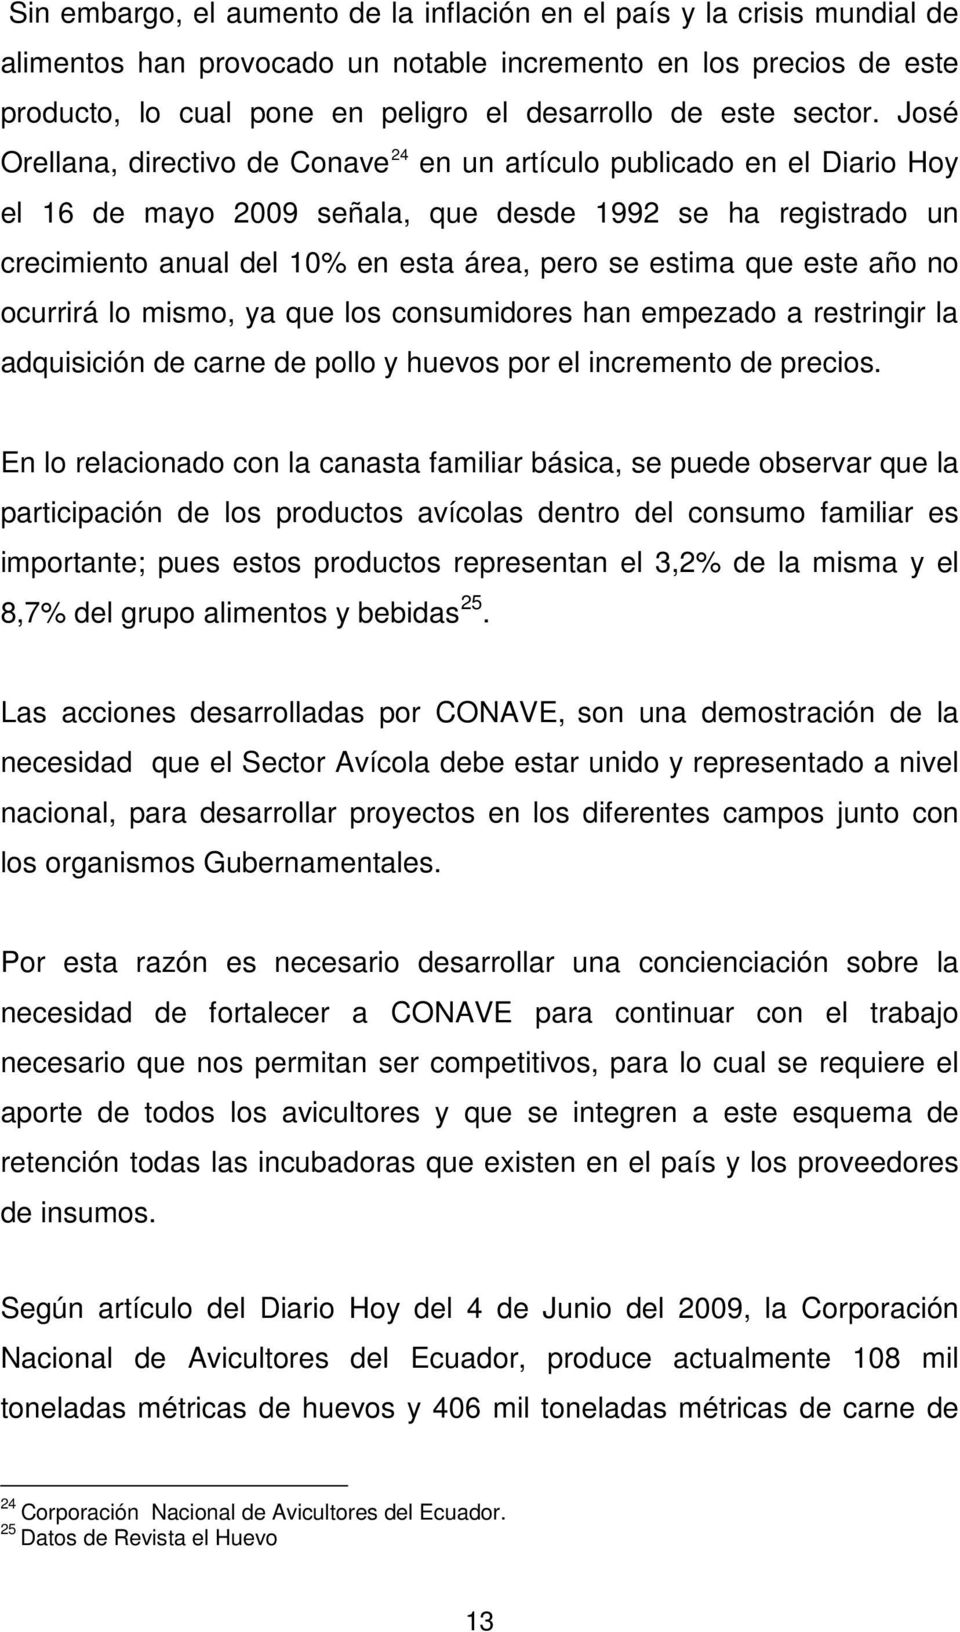 José Orellana, directivo de Conave 24 en un artículo publicado en el Diario Hoy el 16 de mayo 2009 señala, que desde 1992 se ha registrado un crecimiento anual del 10% en esta área, pero se estima